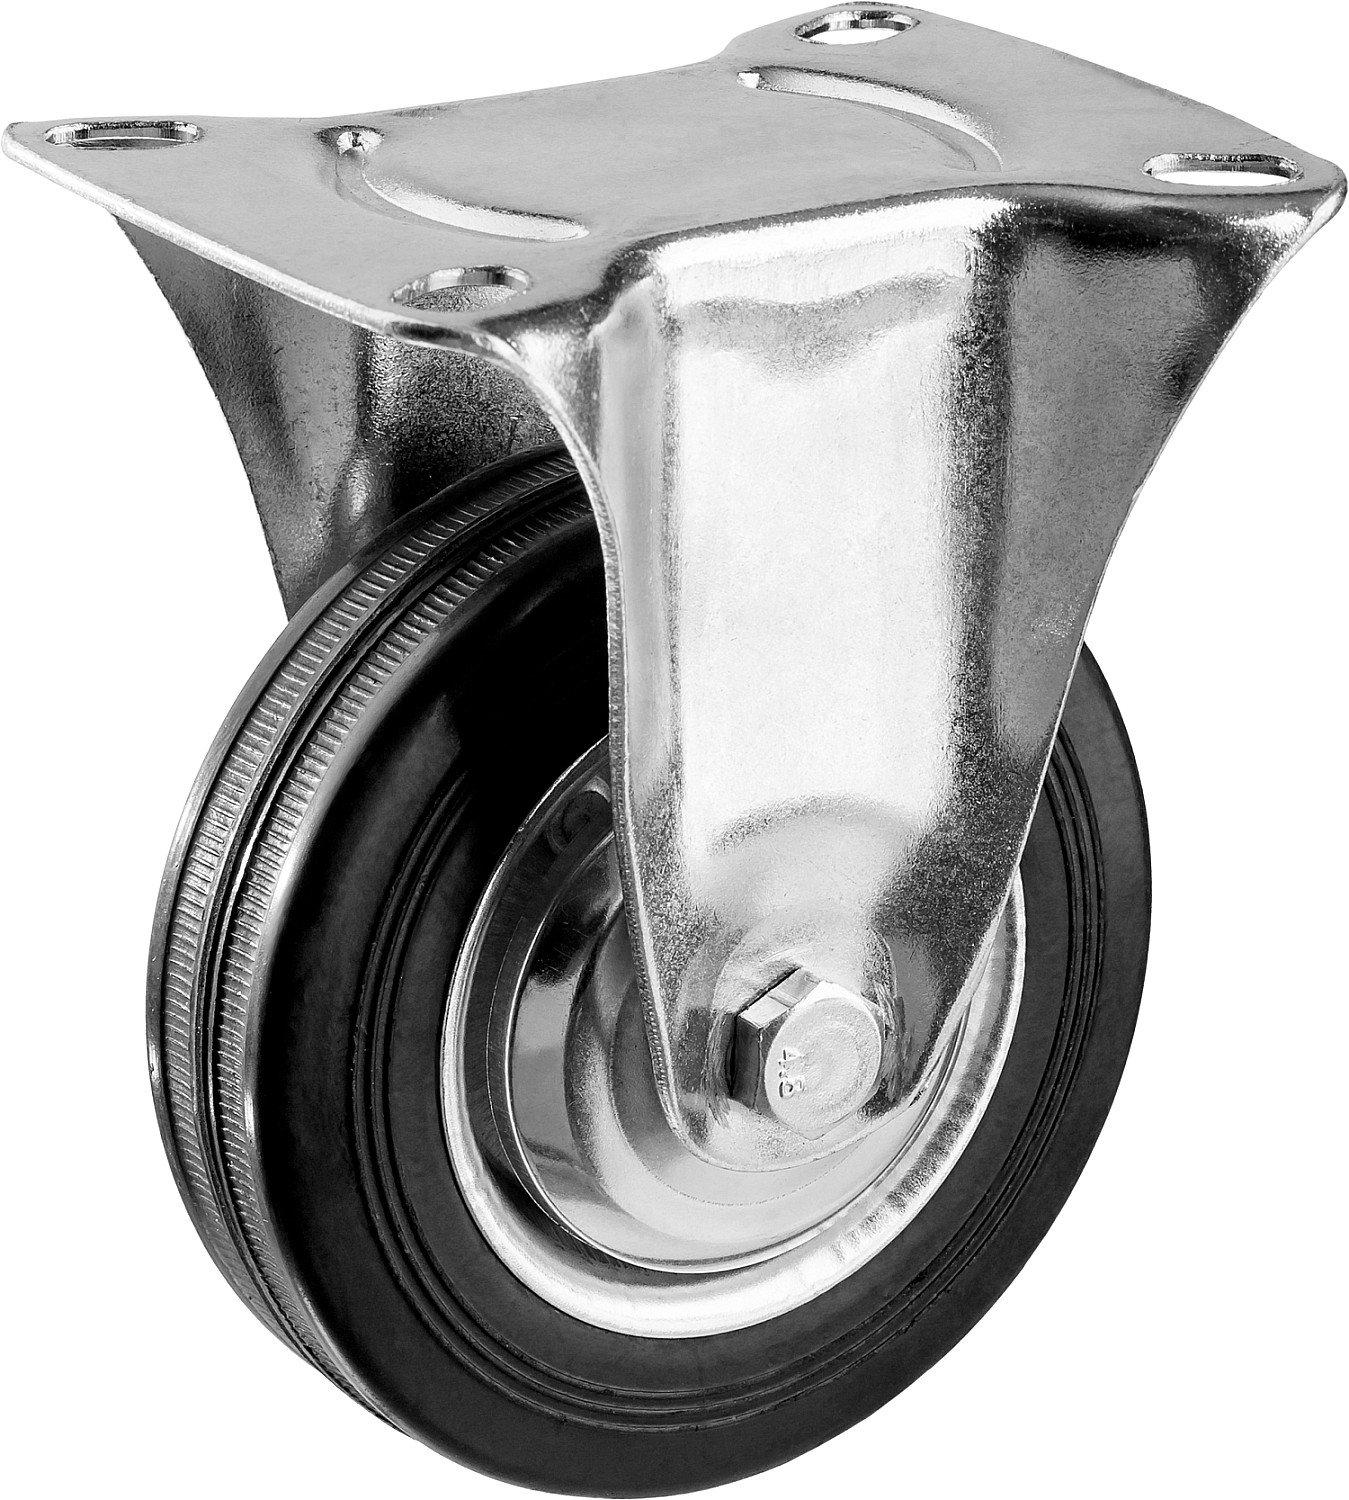 Неповоротное колесо резина металл игольчатый подшипник ЗУБР Профессионал d 100 мм г п 70 кг (30936-100-F)